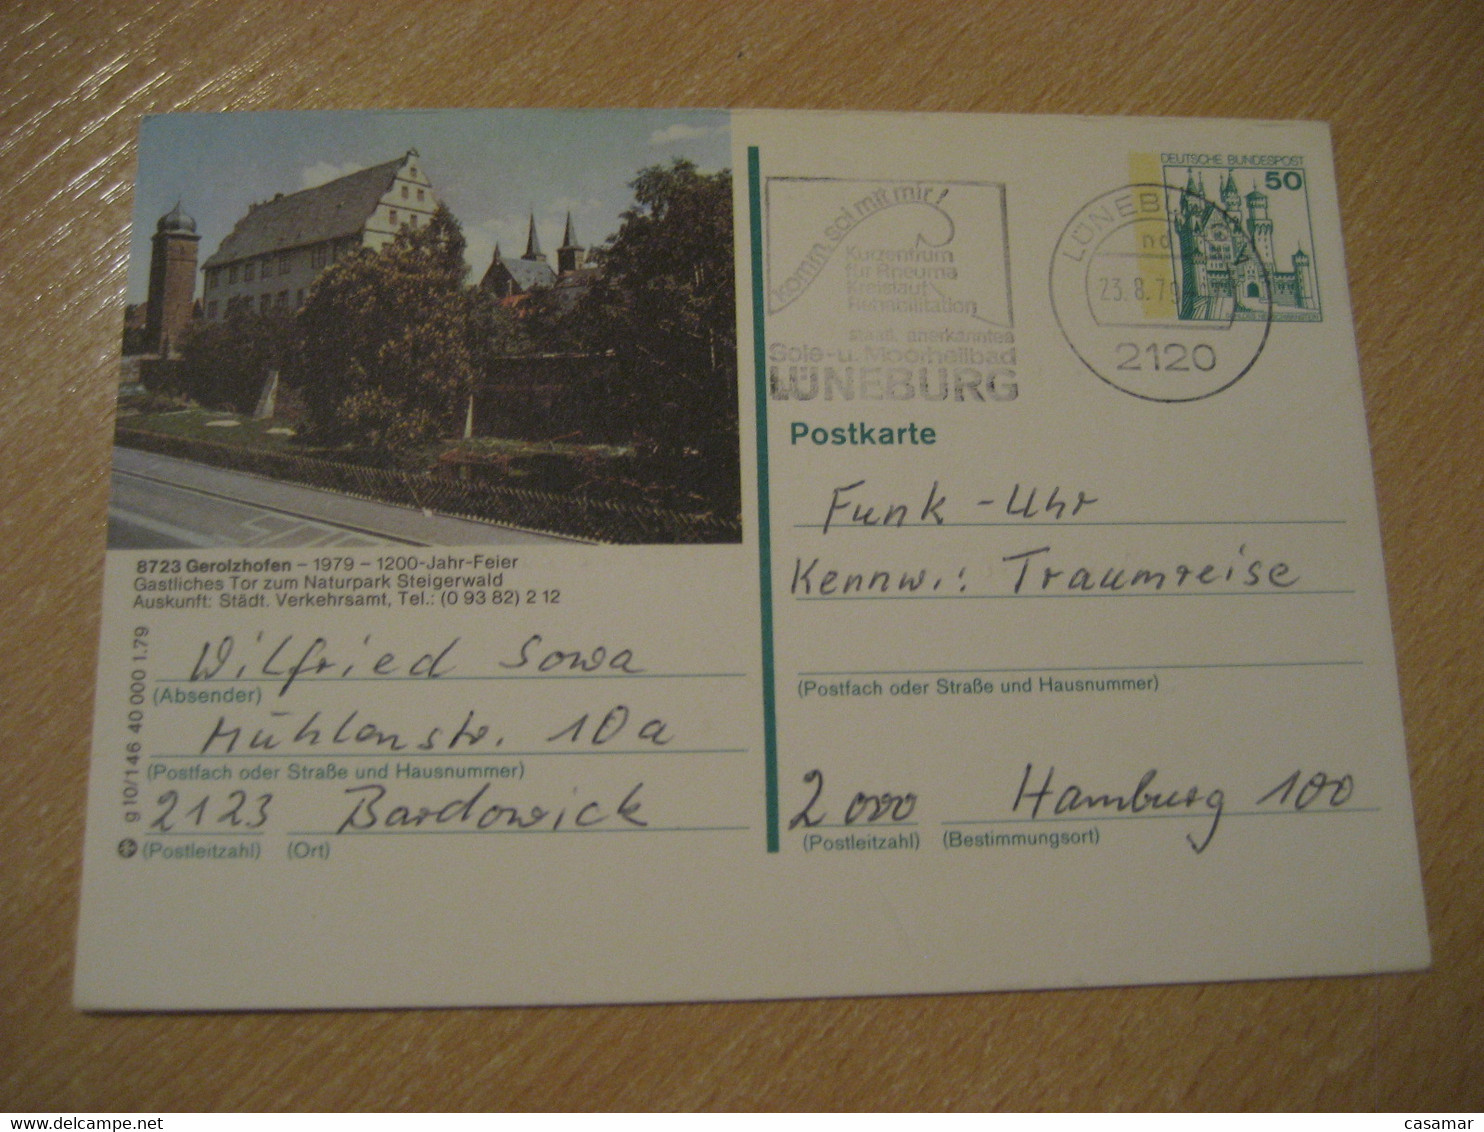 LUNEBURG 1979 Rheuma Rehabilitation Rheumatism Rheumatisme Gerolzhofen Stationery Health Sante Cancel Card GERMANY - Kuurwezen